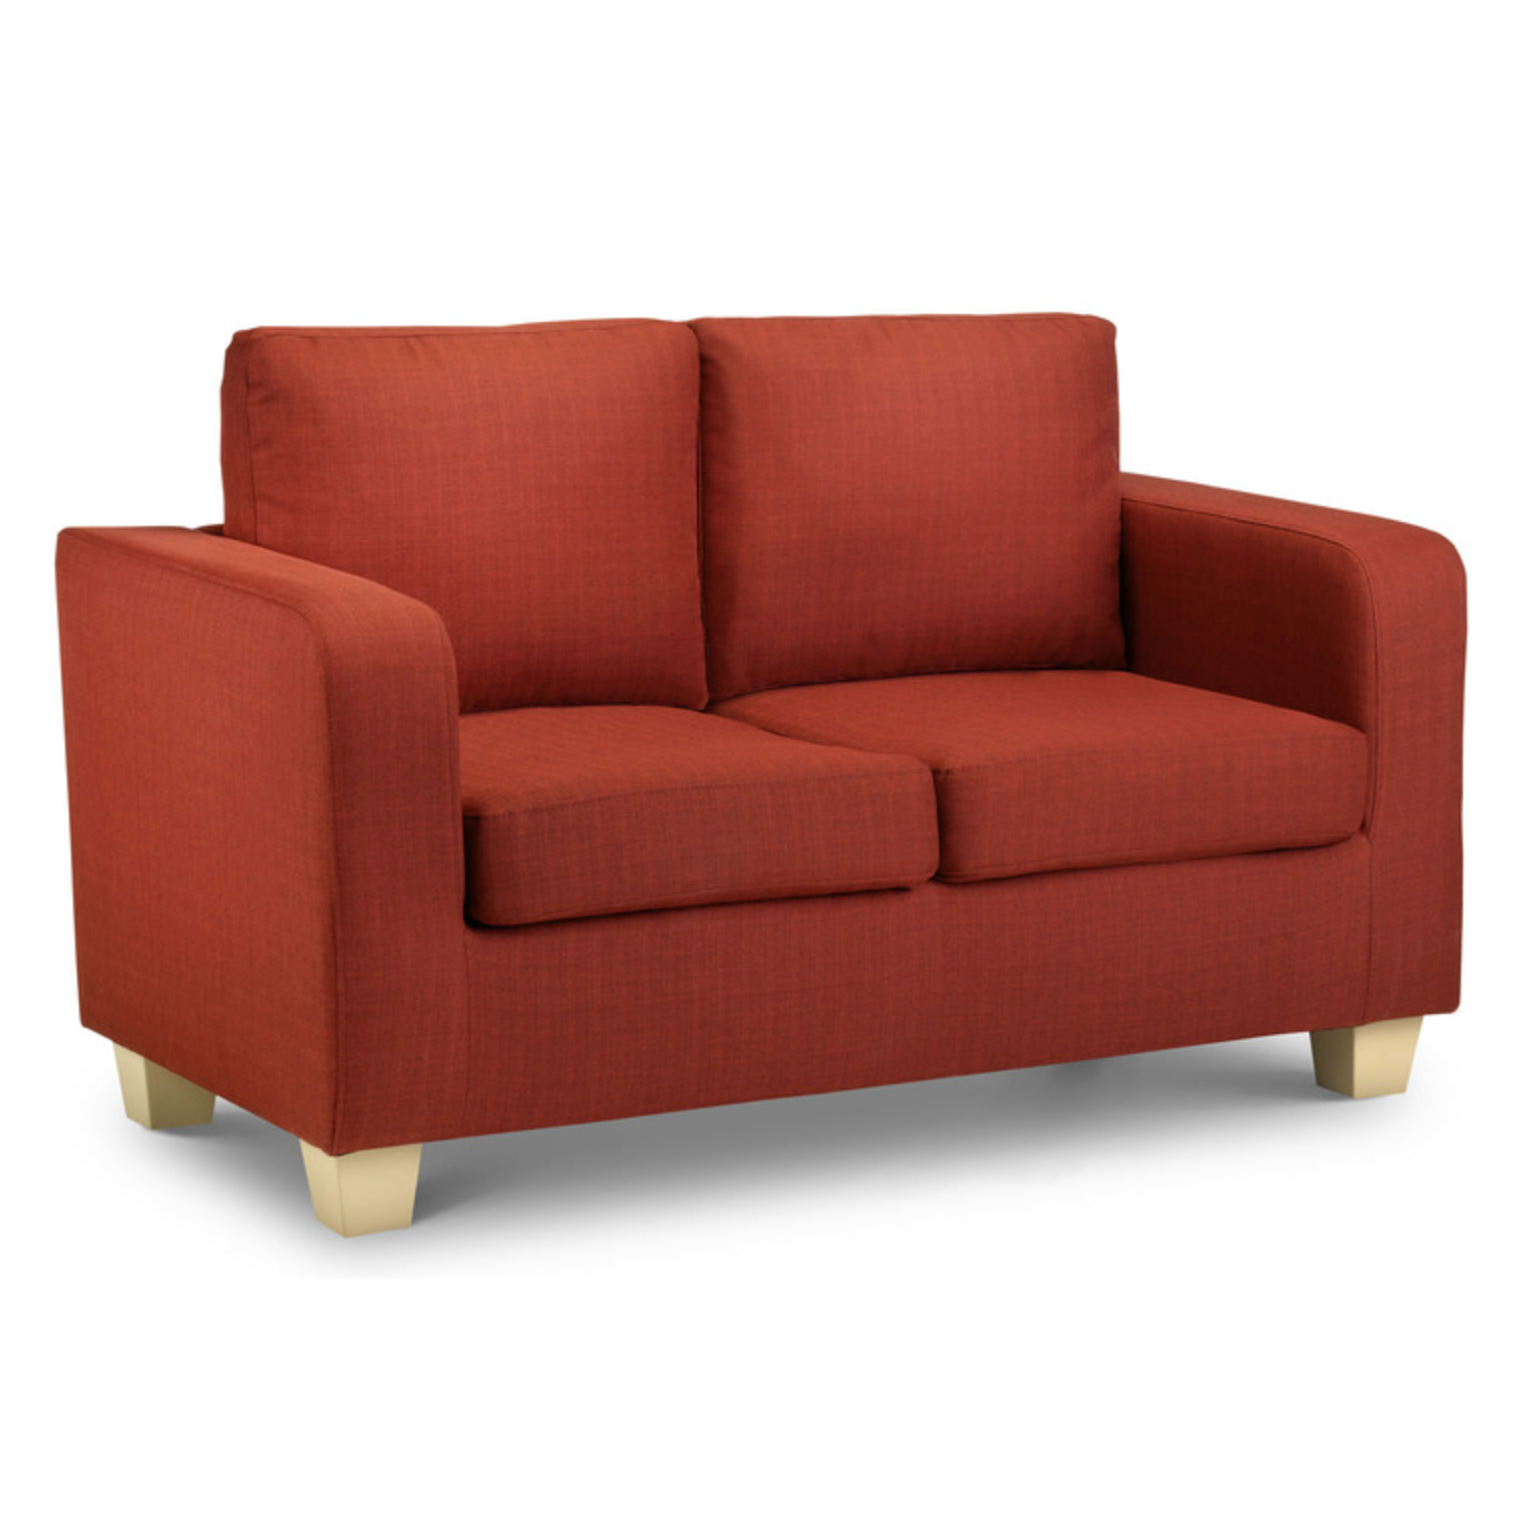 Maxine 2 Seater Sofa Turin Red Fabric